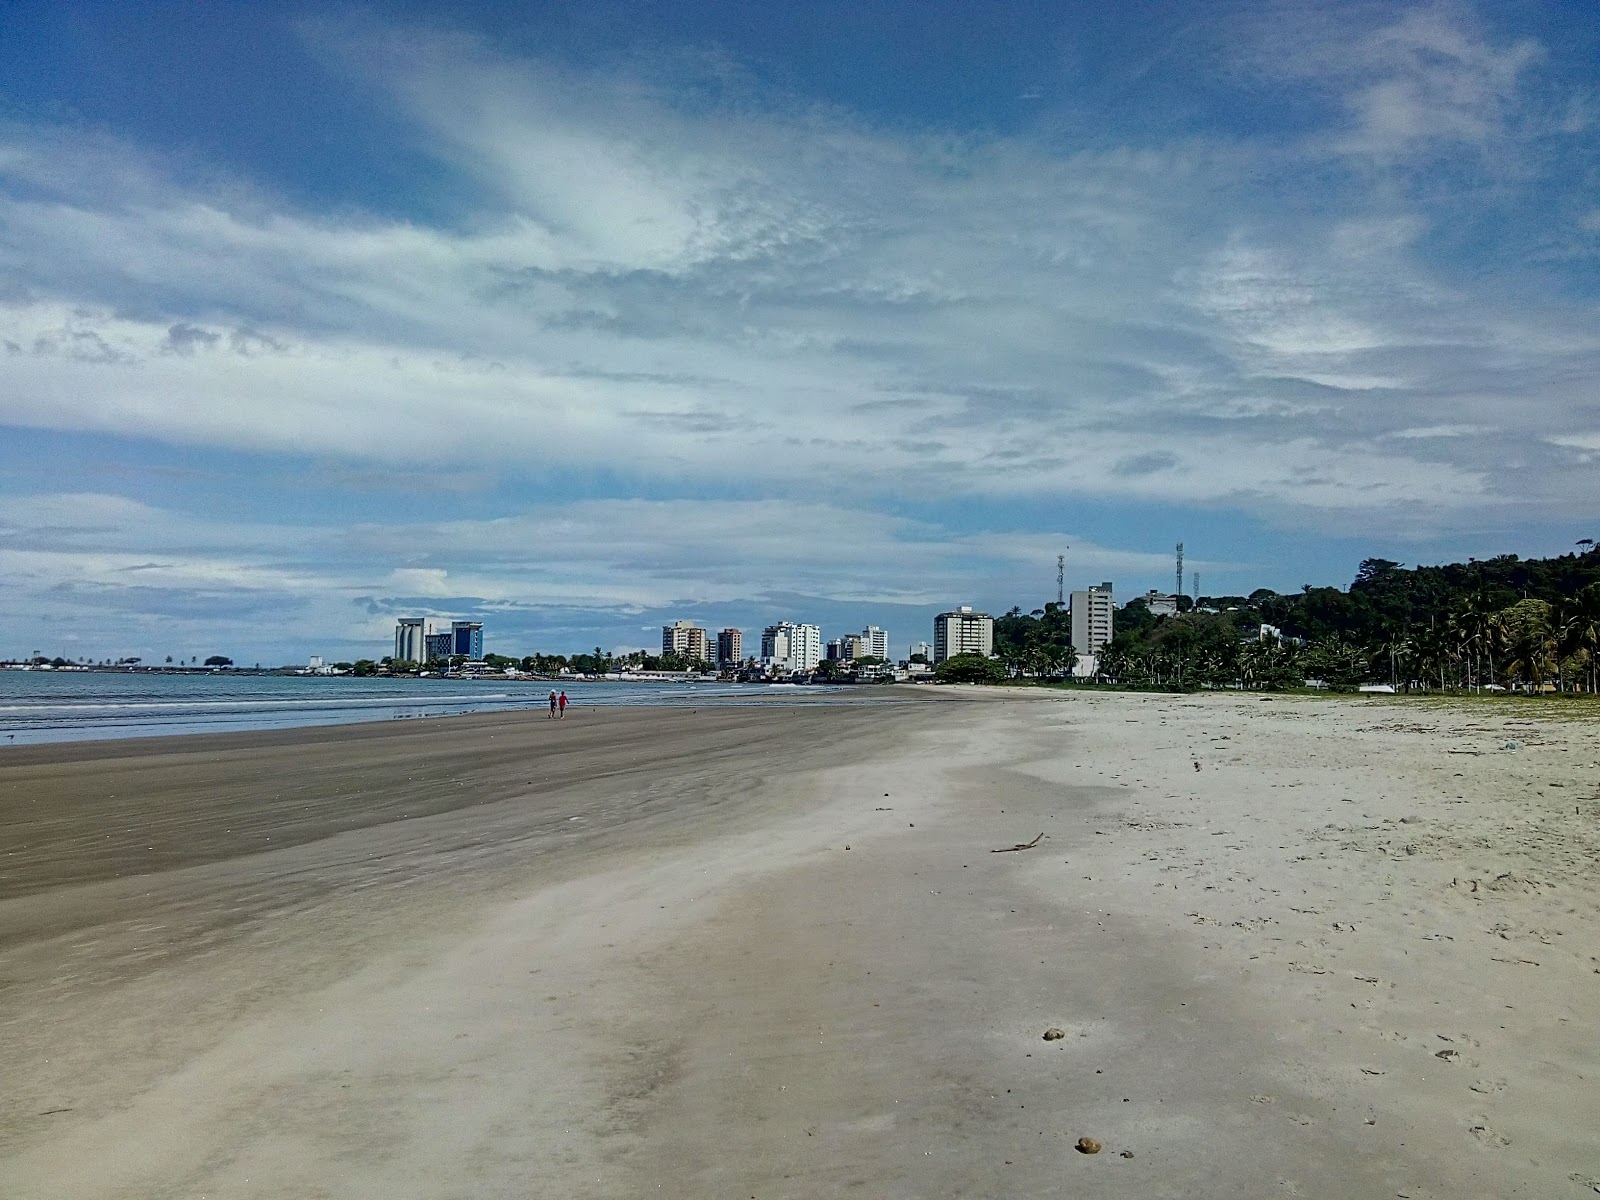 Praia do Malhado'in fotoğrafı parlak kum yüzey ile